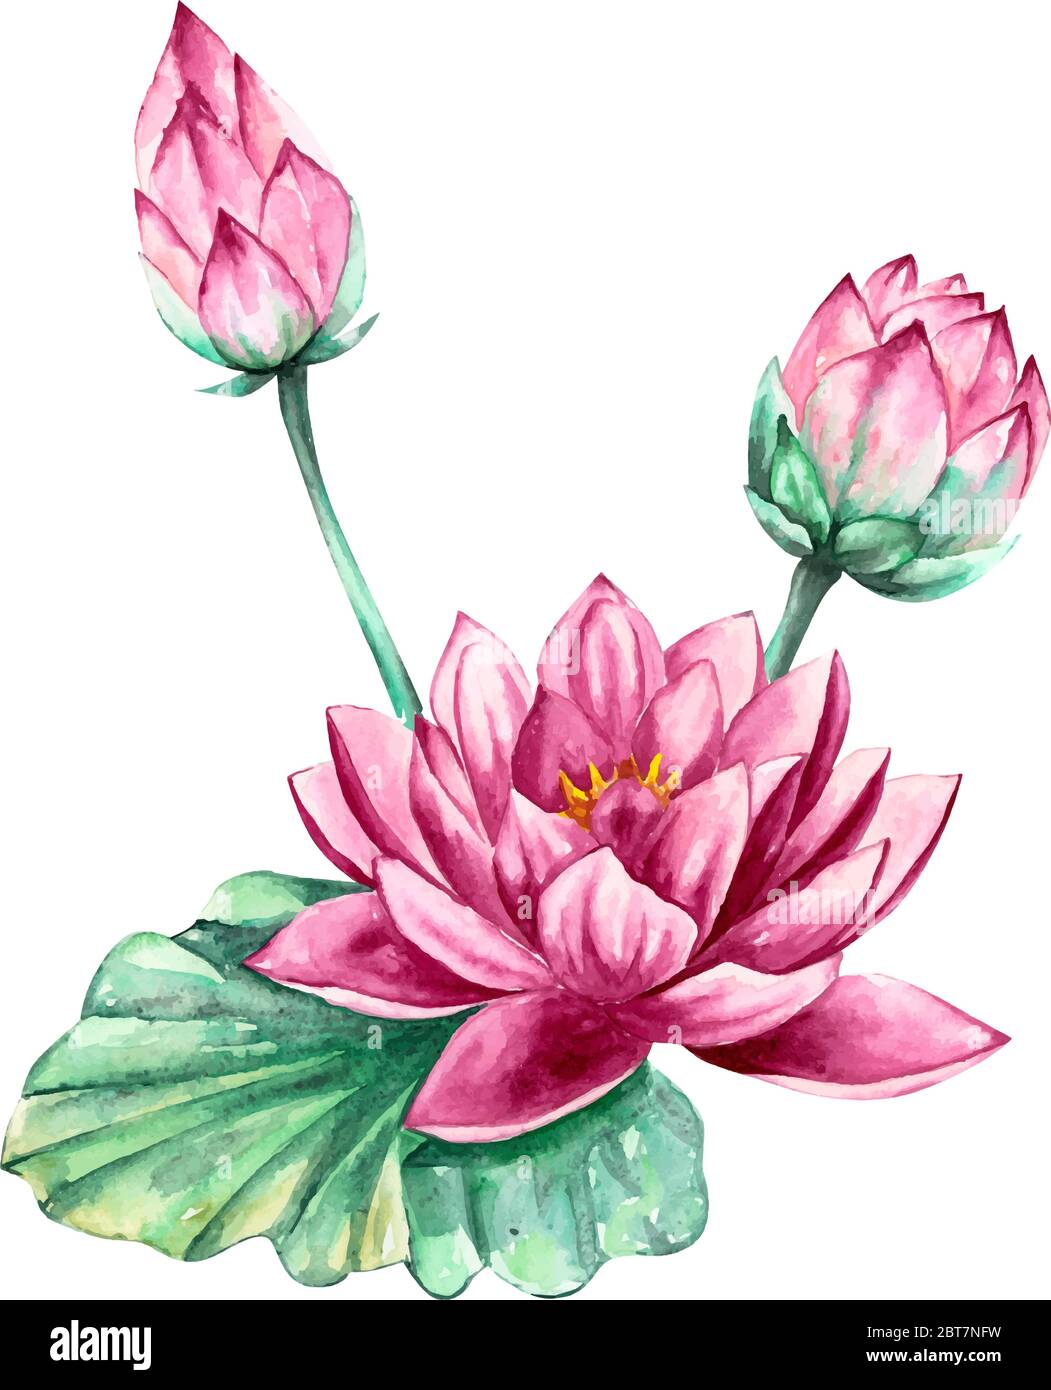 Rose et violet nénuphar fleur de lotus, illustration d'aquarelle vectorielle, isolée sur fond blanc Illustration de Vecteur